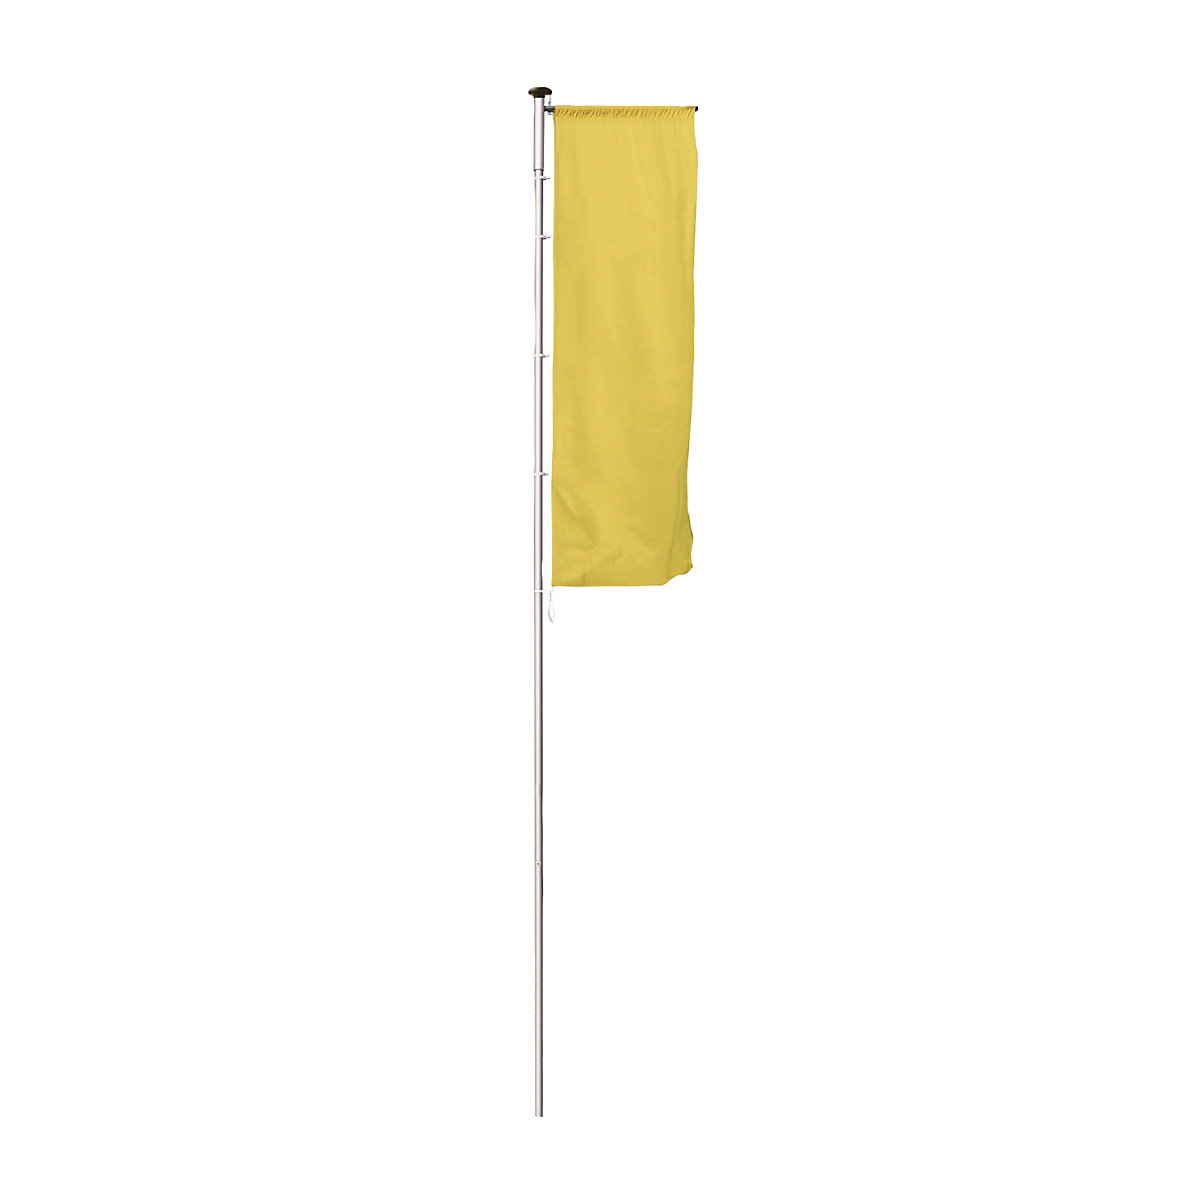 PIRAT aluminium flag pole – Mannus